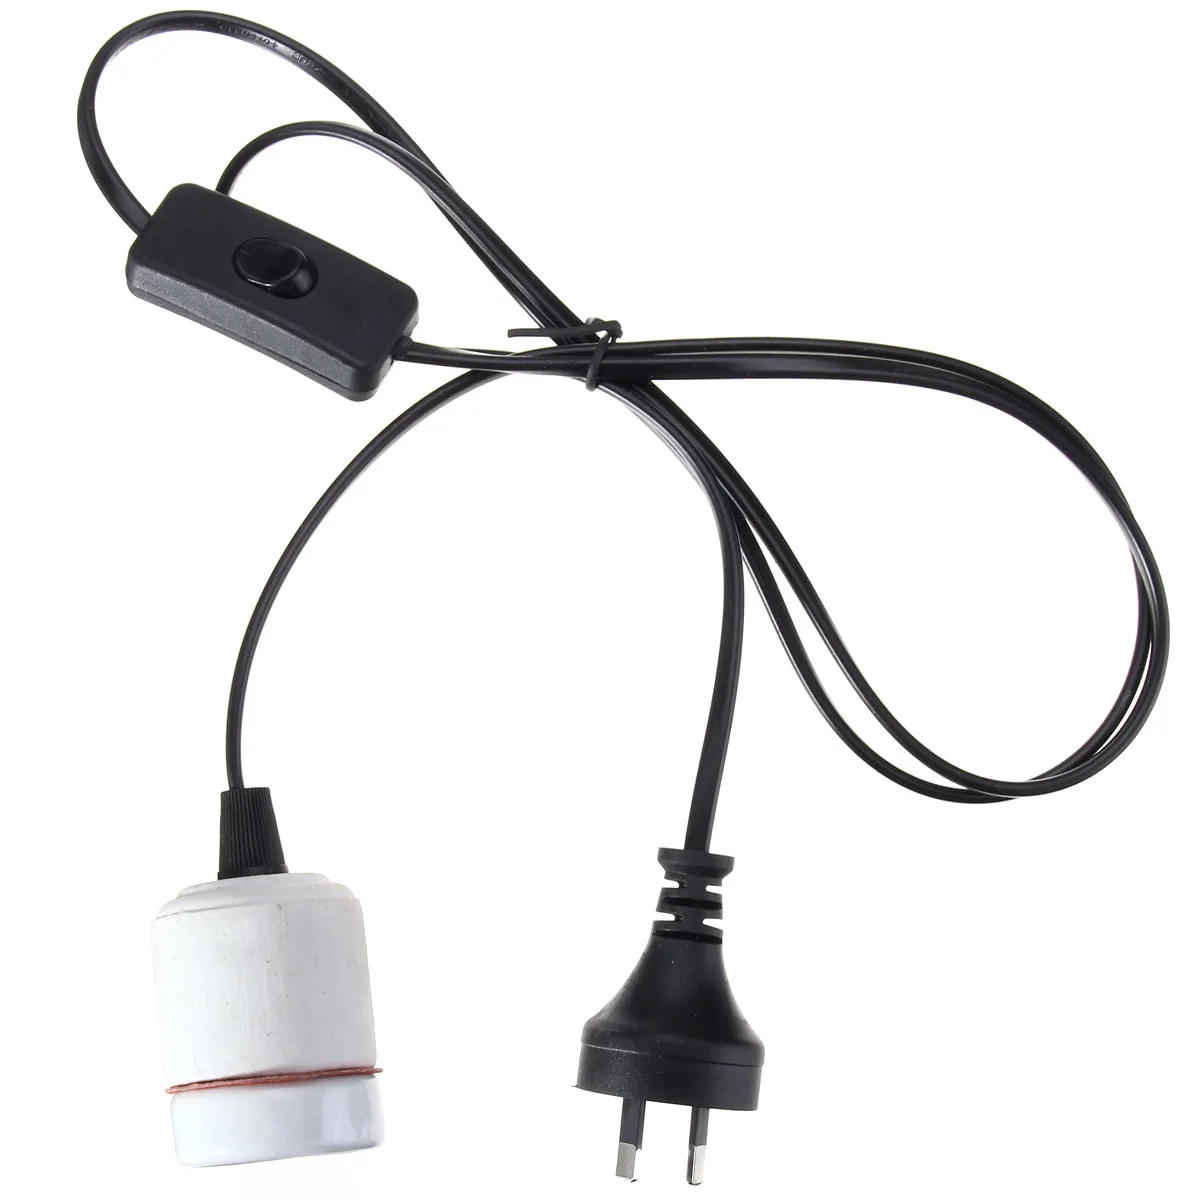 LWARML E27 рептилия керамическая тепловая лампа держатель с розетка для управления светом адаптер лампы 1,5 м провод прямой штуцер для смешивания 300 Вт AC110-220V - Цвет: AU